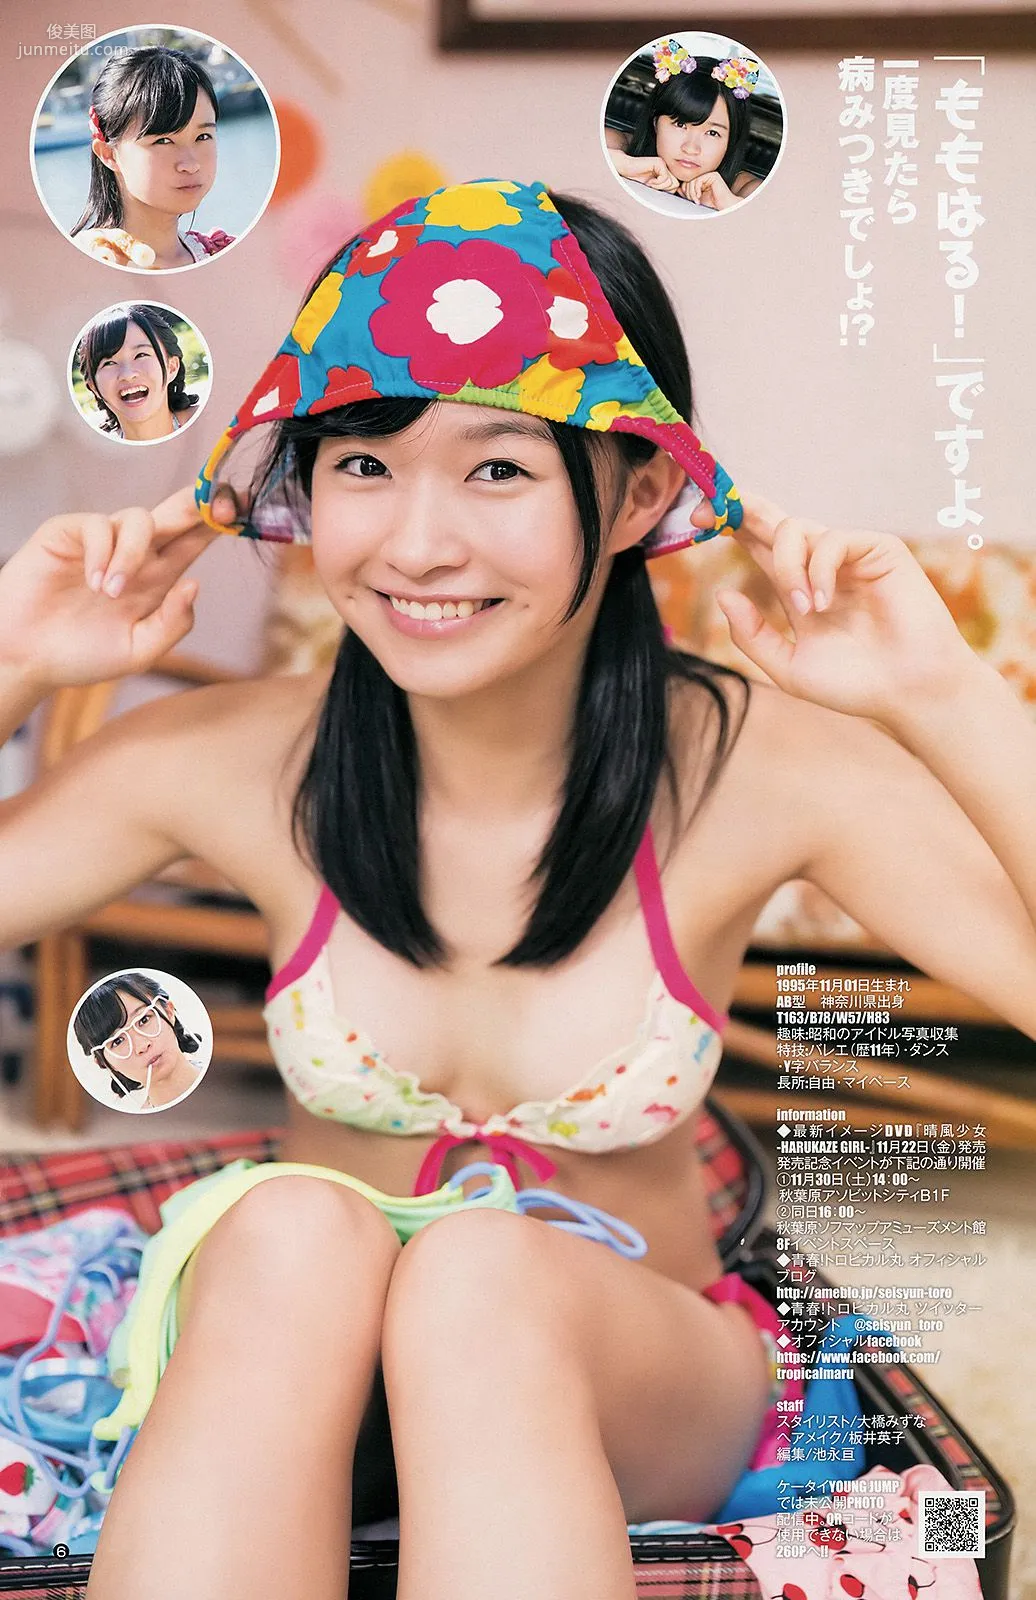 橋本奈々未 百川晴香 私立恵比寿中学 [Weekly Young Jump] 2013年No.51 写真杂志14